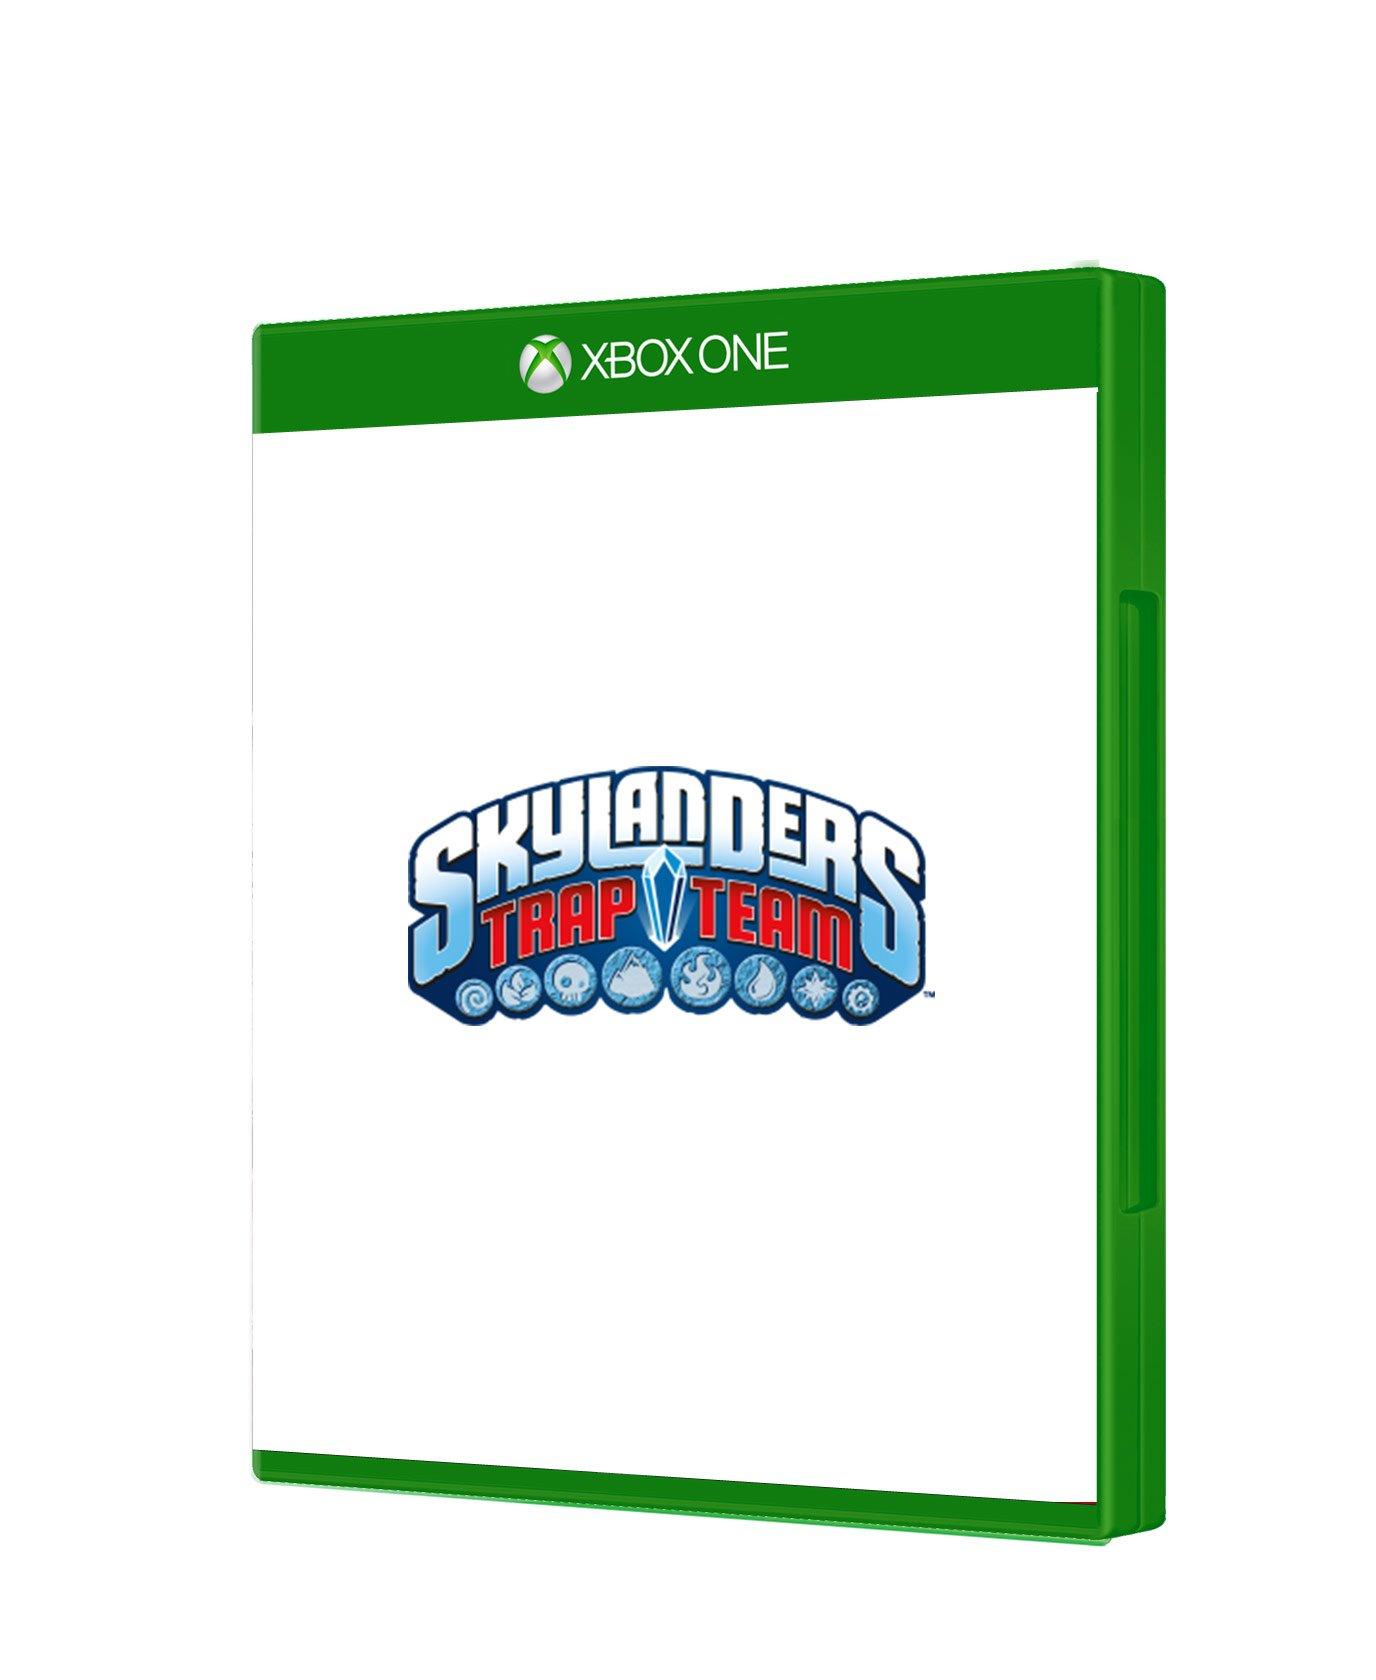 skylanders xbox one game